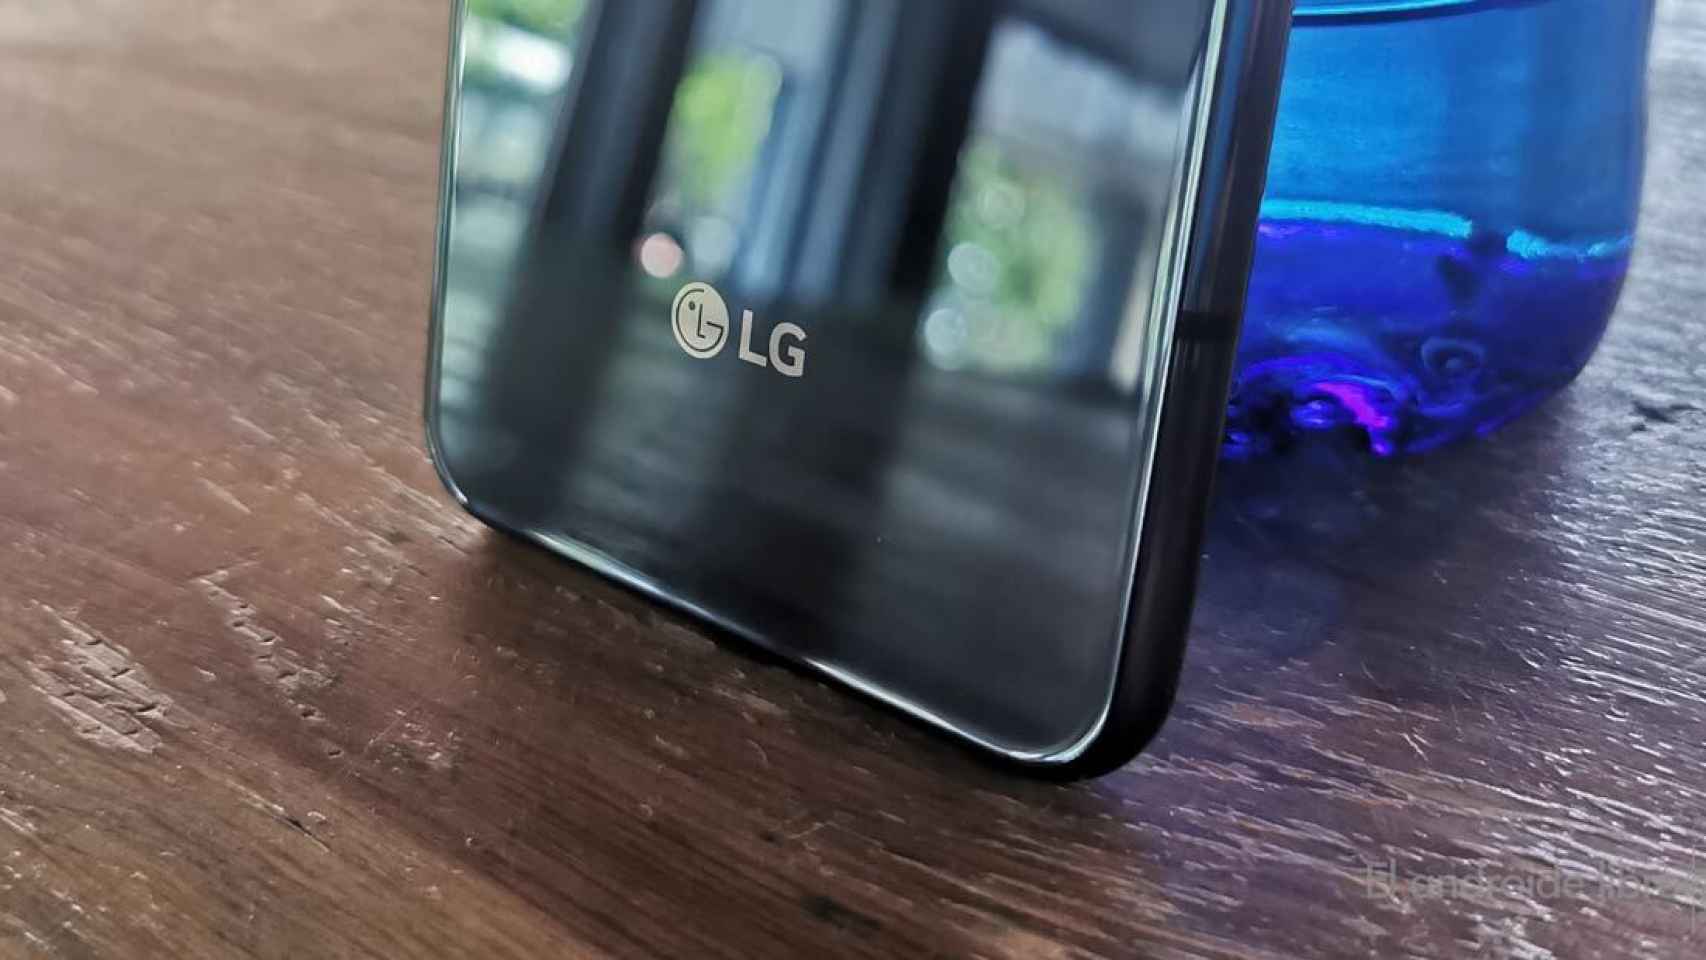 Probamos el LG G8s ThinQ, un móvil potente y con gestos en el aire